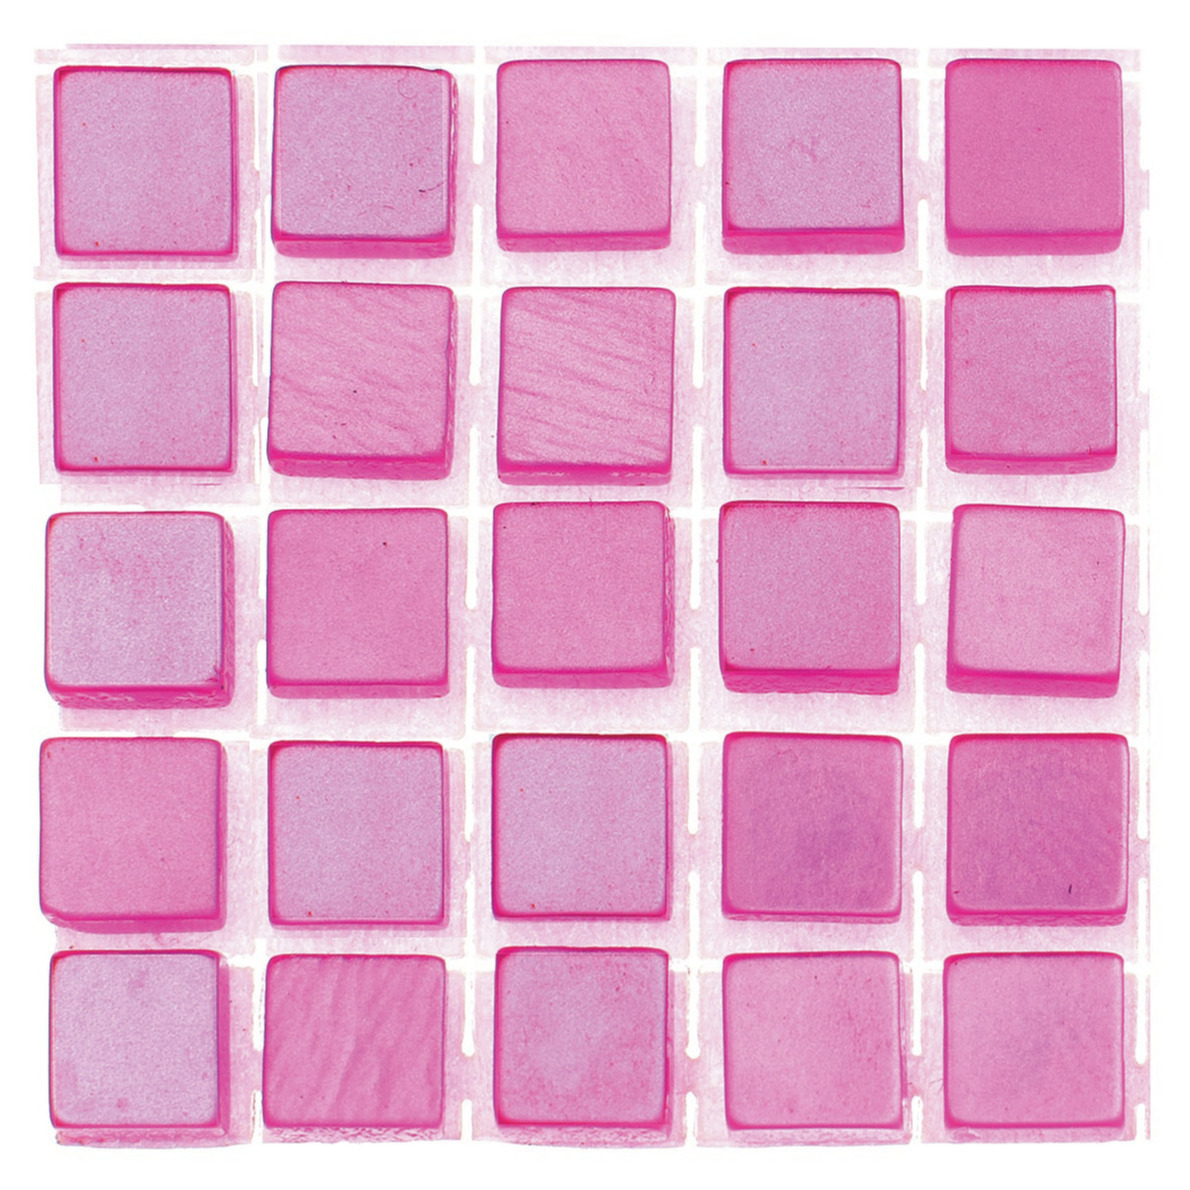 476x stuks mozaieken maken steentjes/tegels kleur roze 5 x 5 x 2 mm -